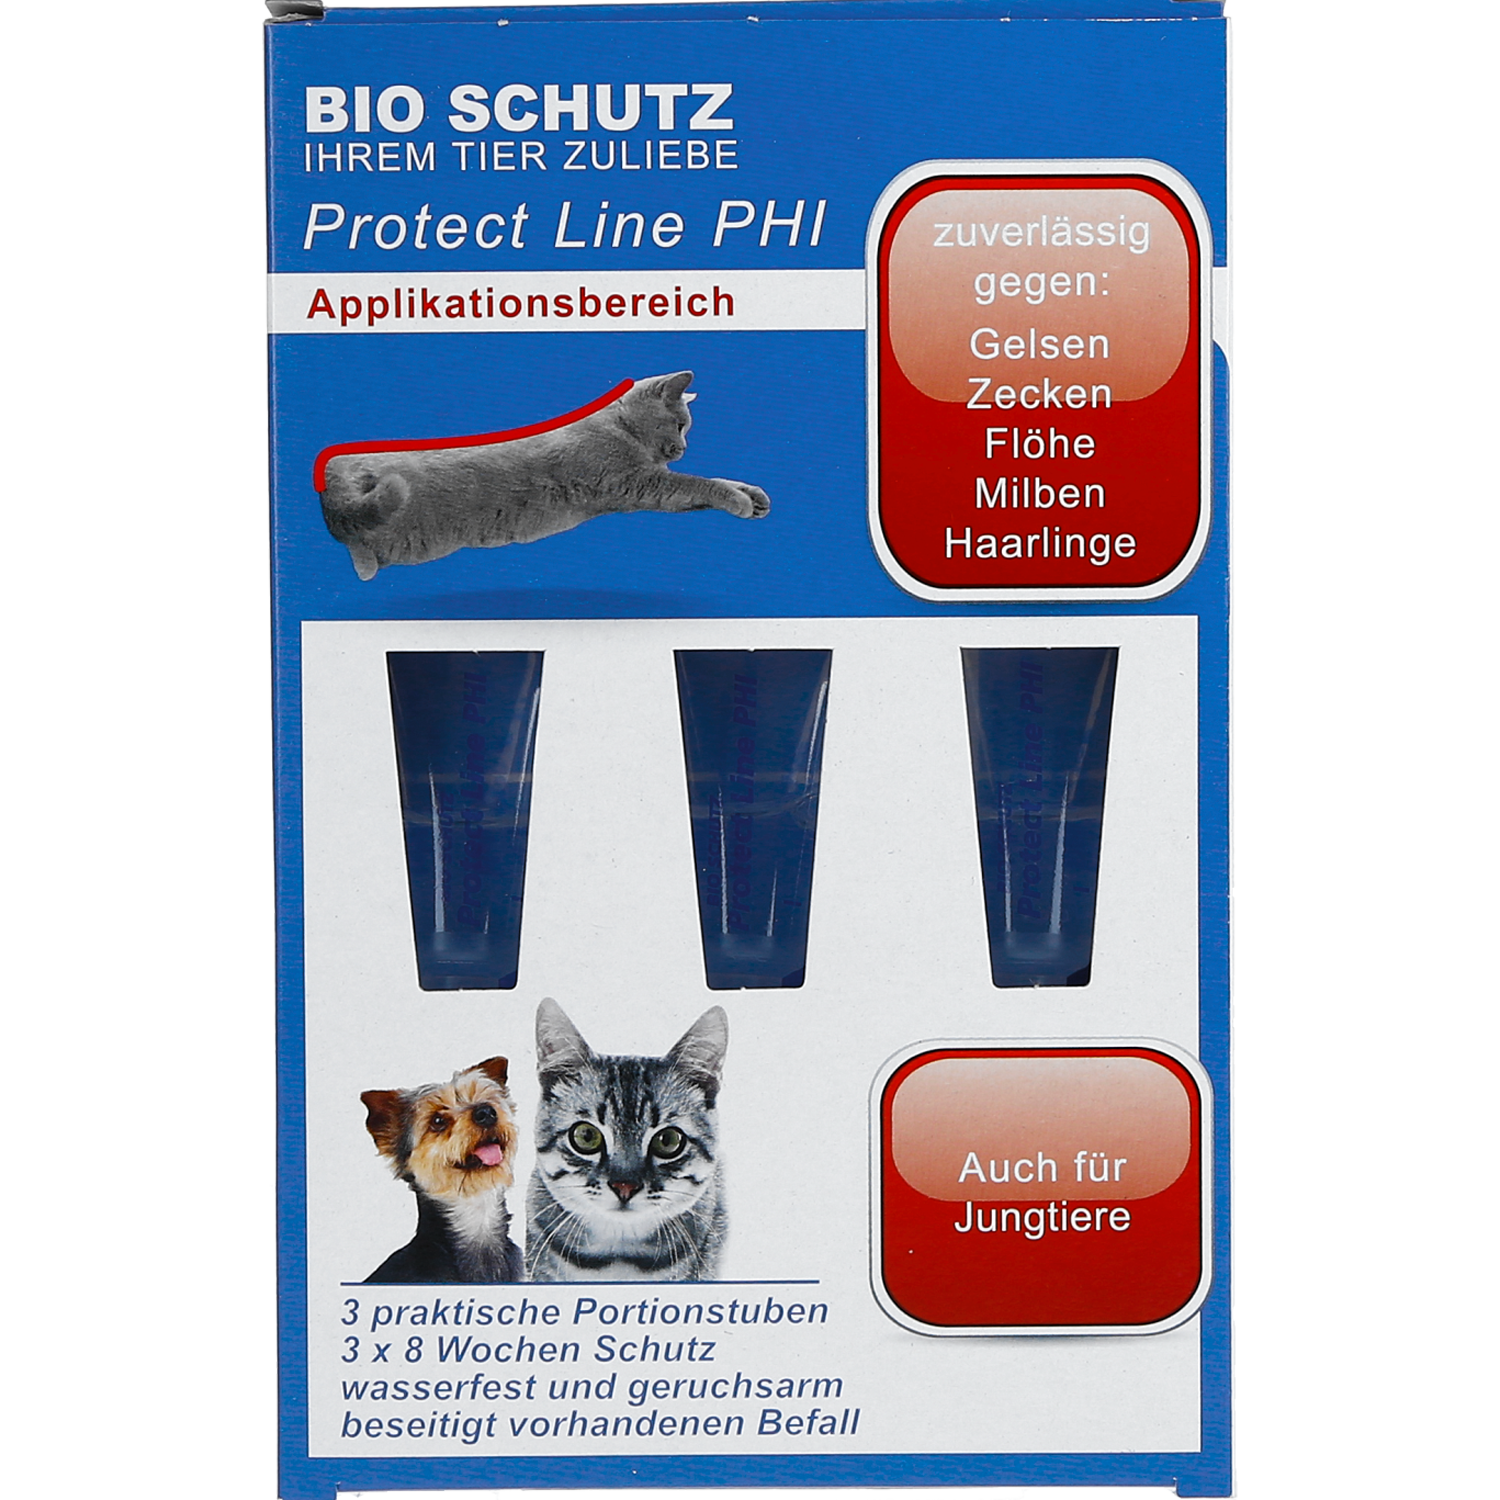 BIO SCHUTZ PROTECT LINE PHI für Katzen und kleine Hunde